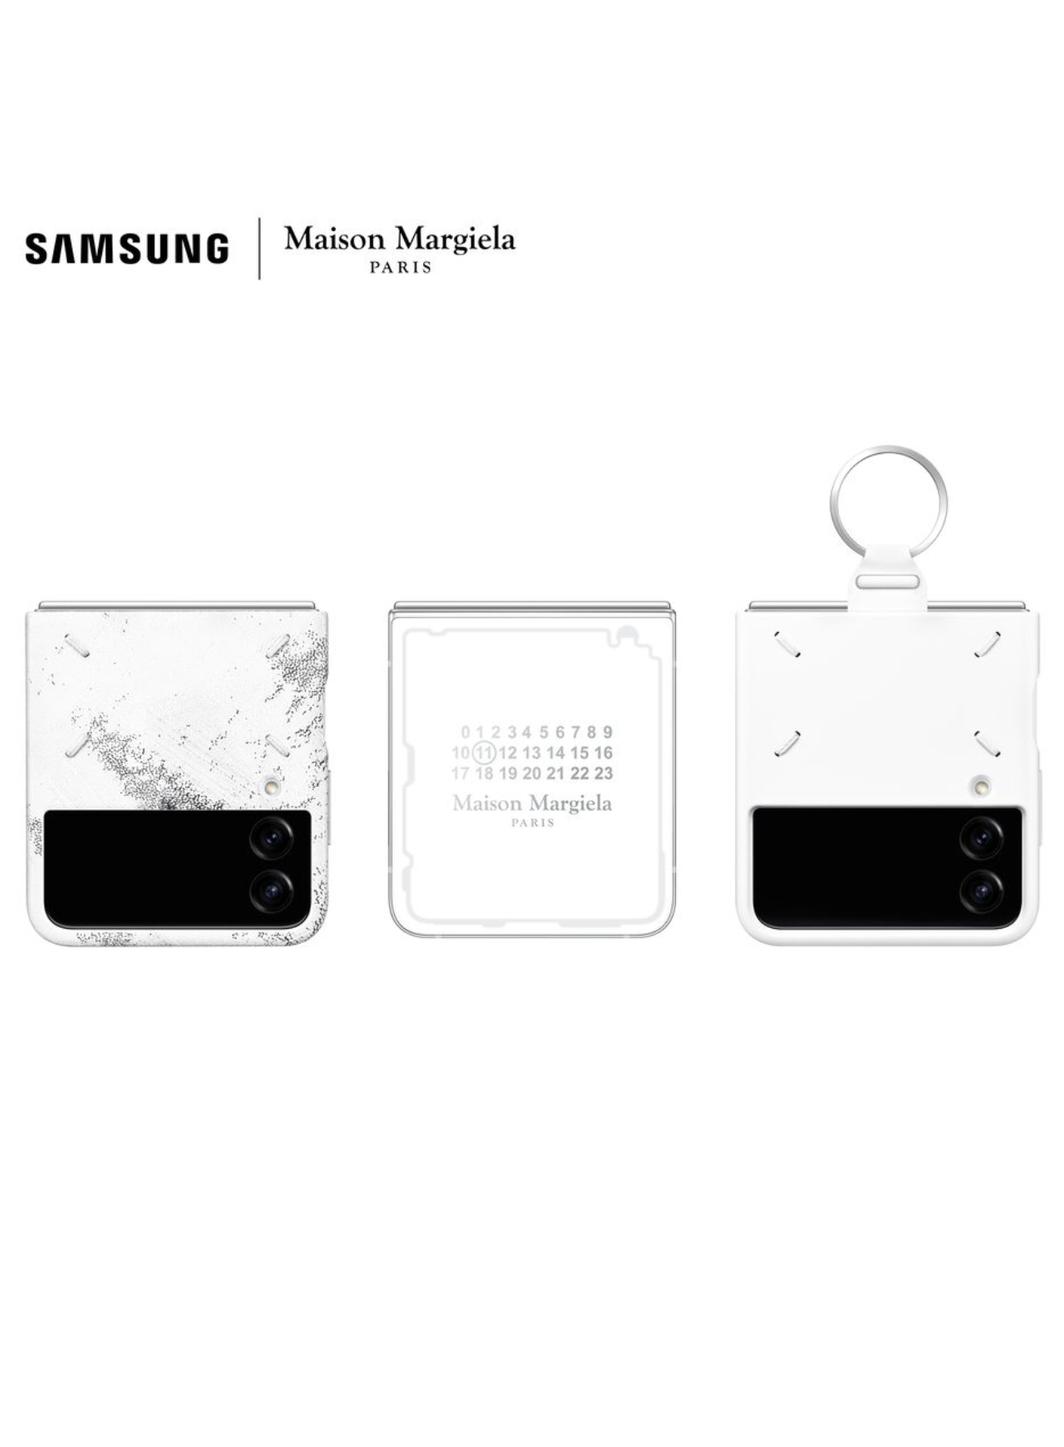 Samsung annonce une collaboration avec Maison Margiela.